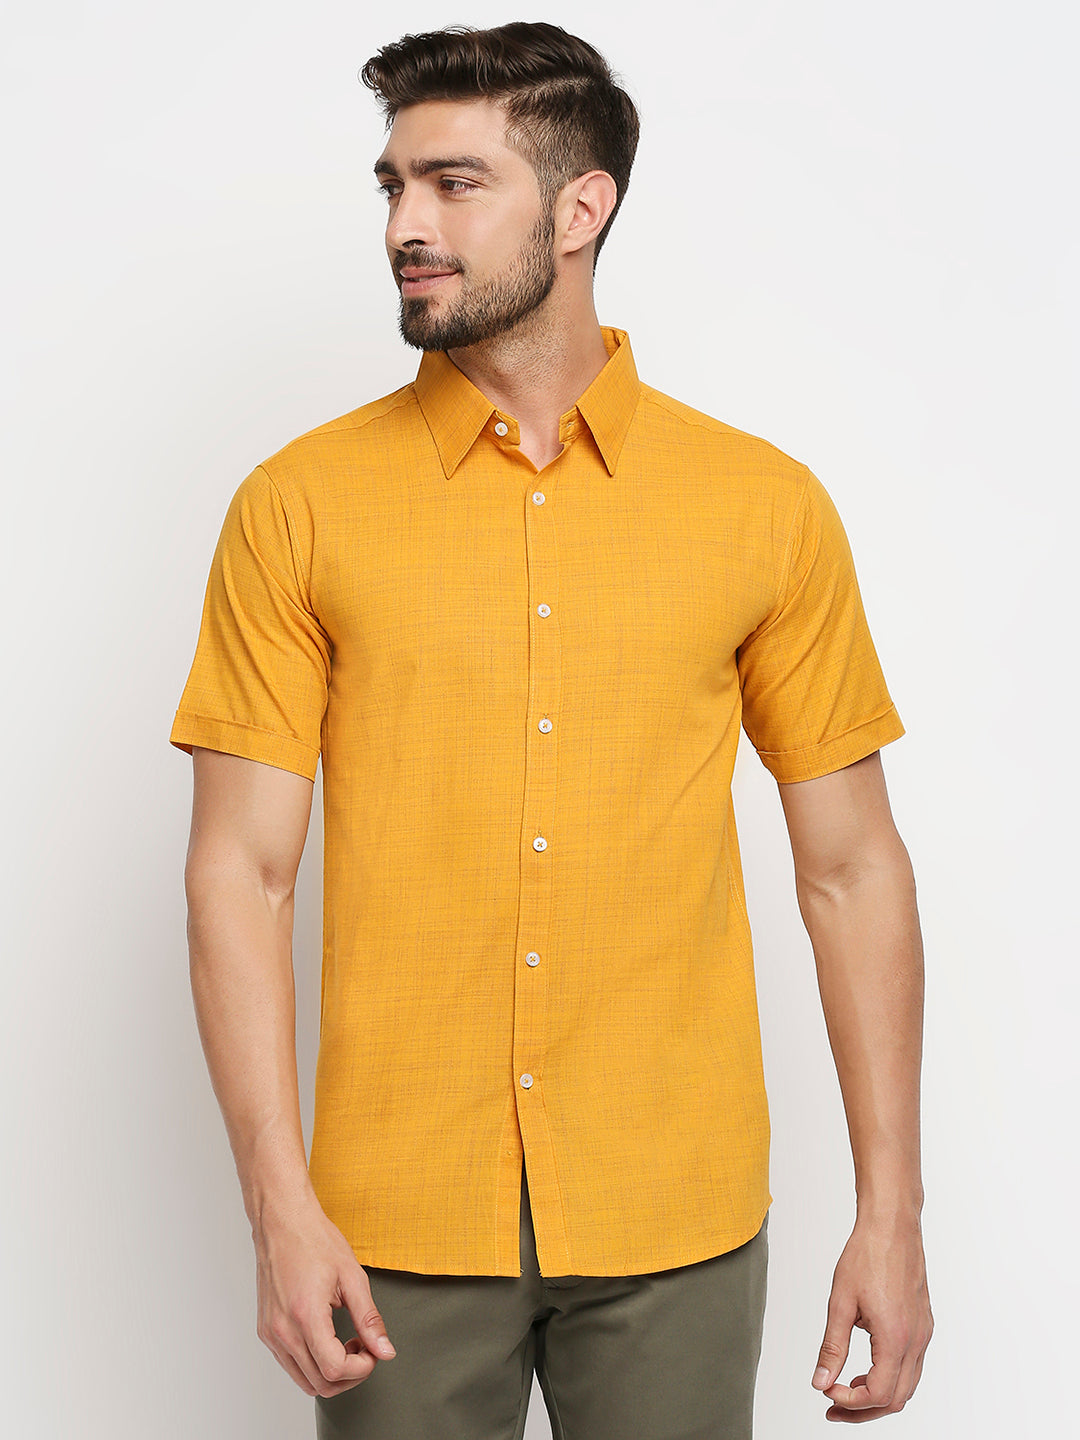 Bliss Pure Cotton Golden Yellow Shirt